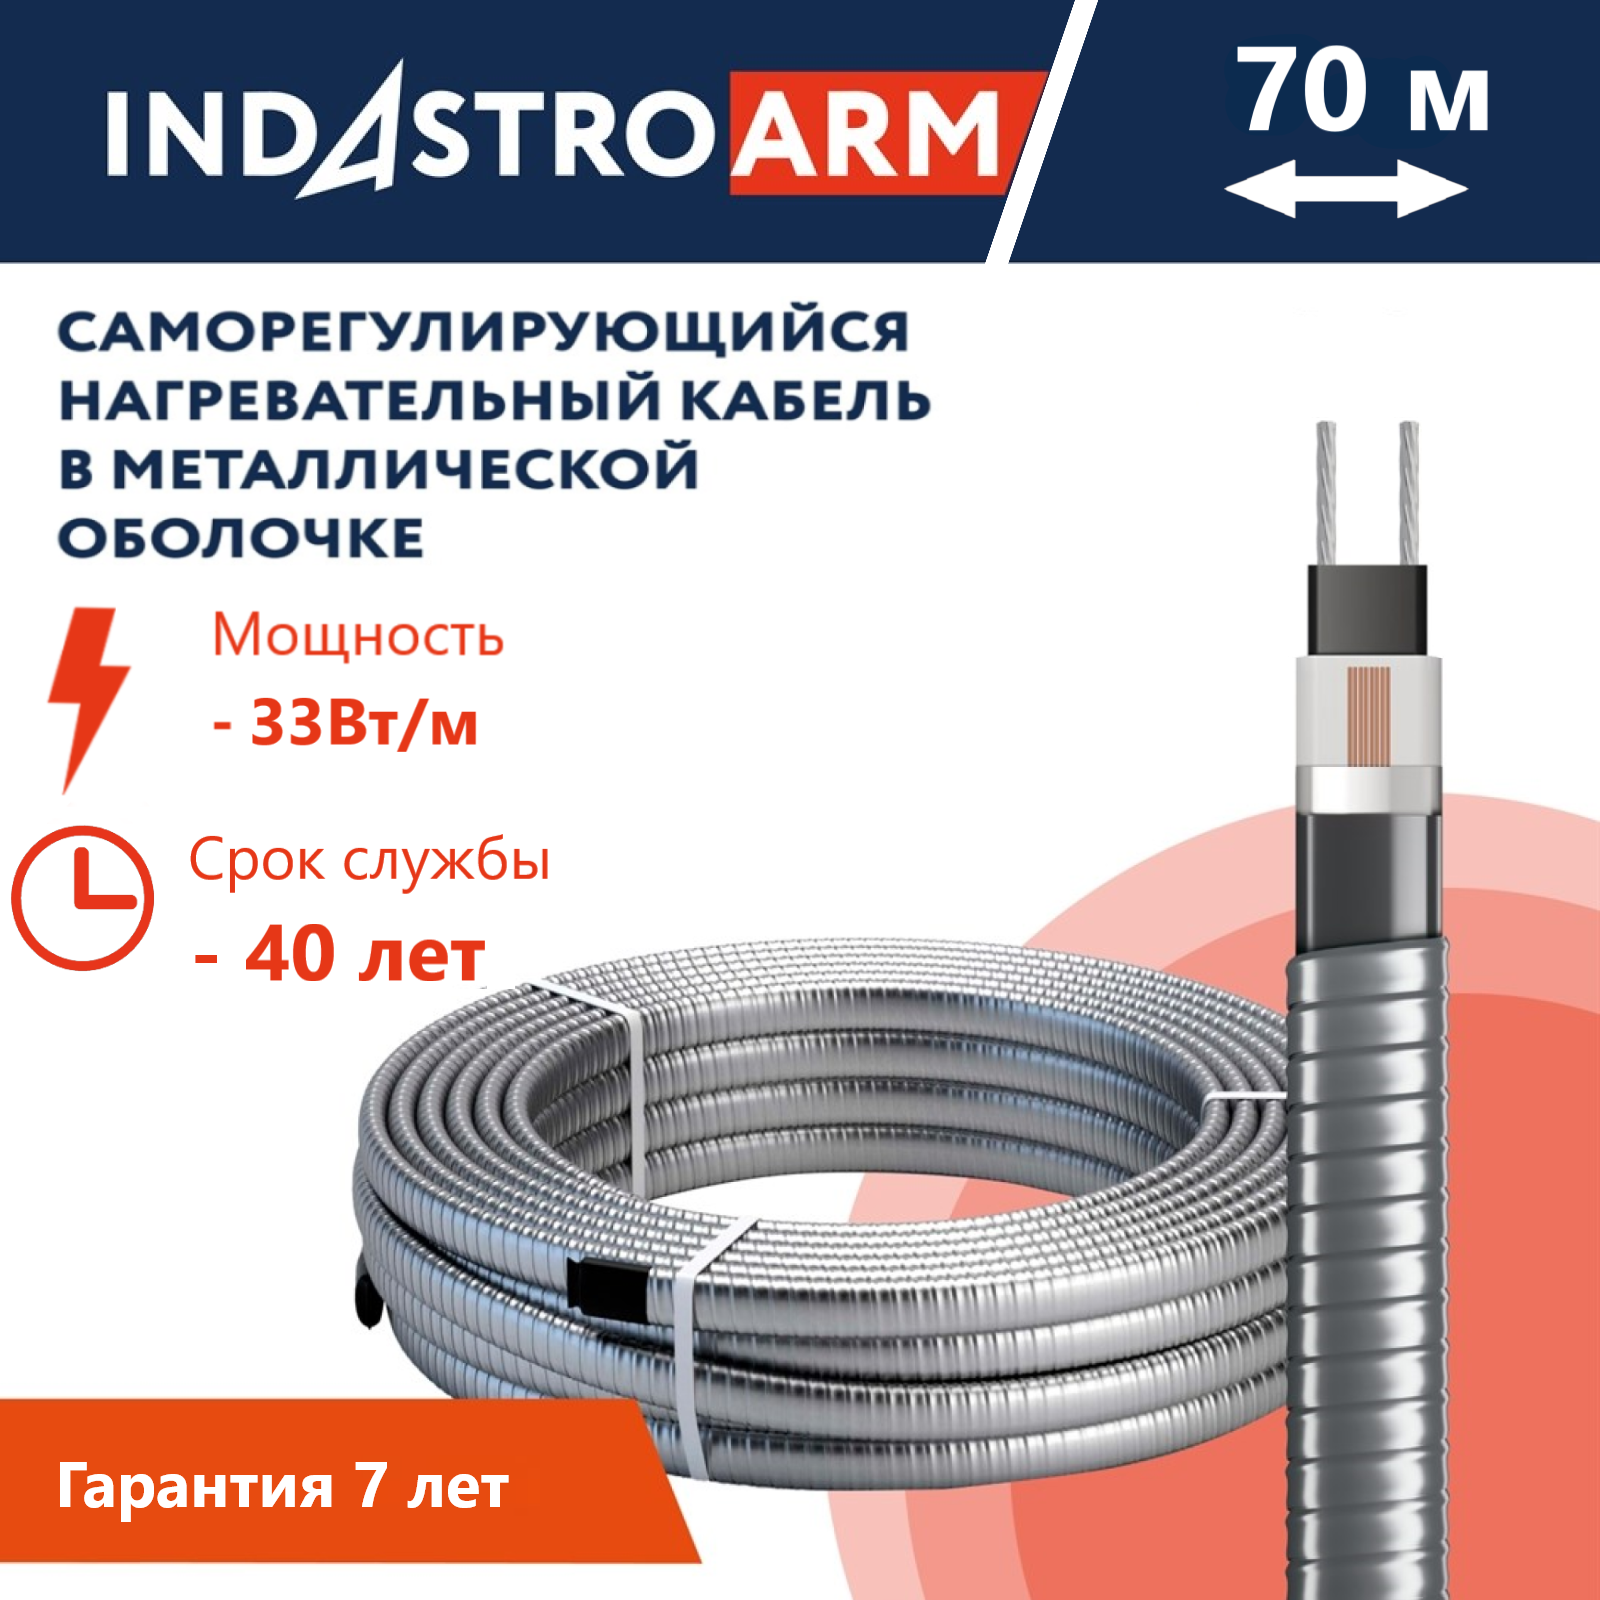 Греющий кабель в броне для обогрева кровли, водостоков IndAstro ARM, 33 Вт/м, 70 метров.